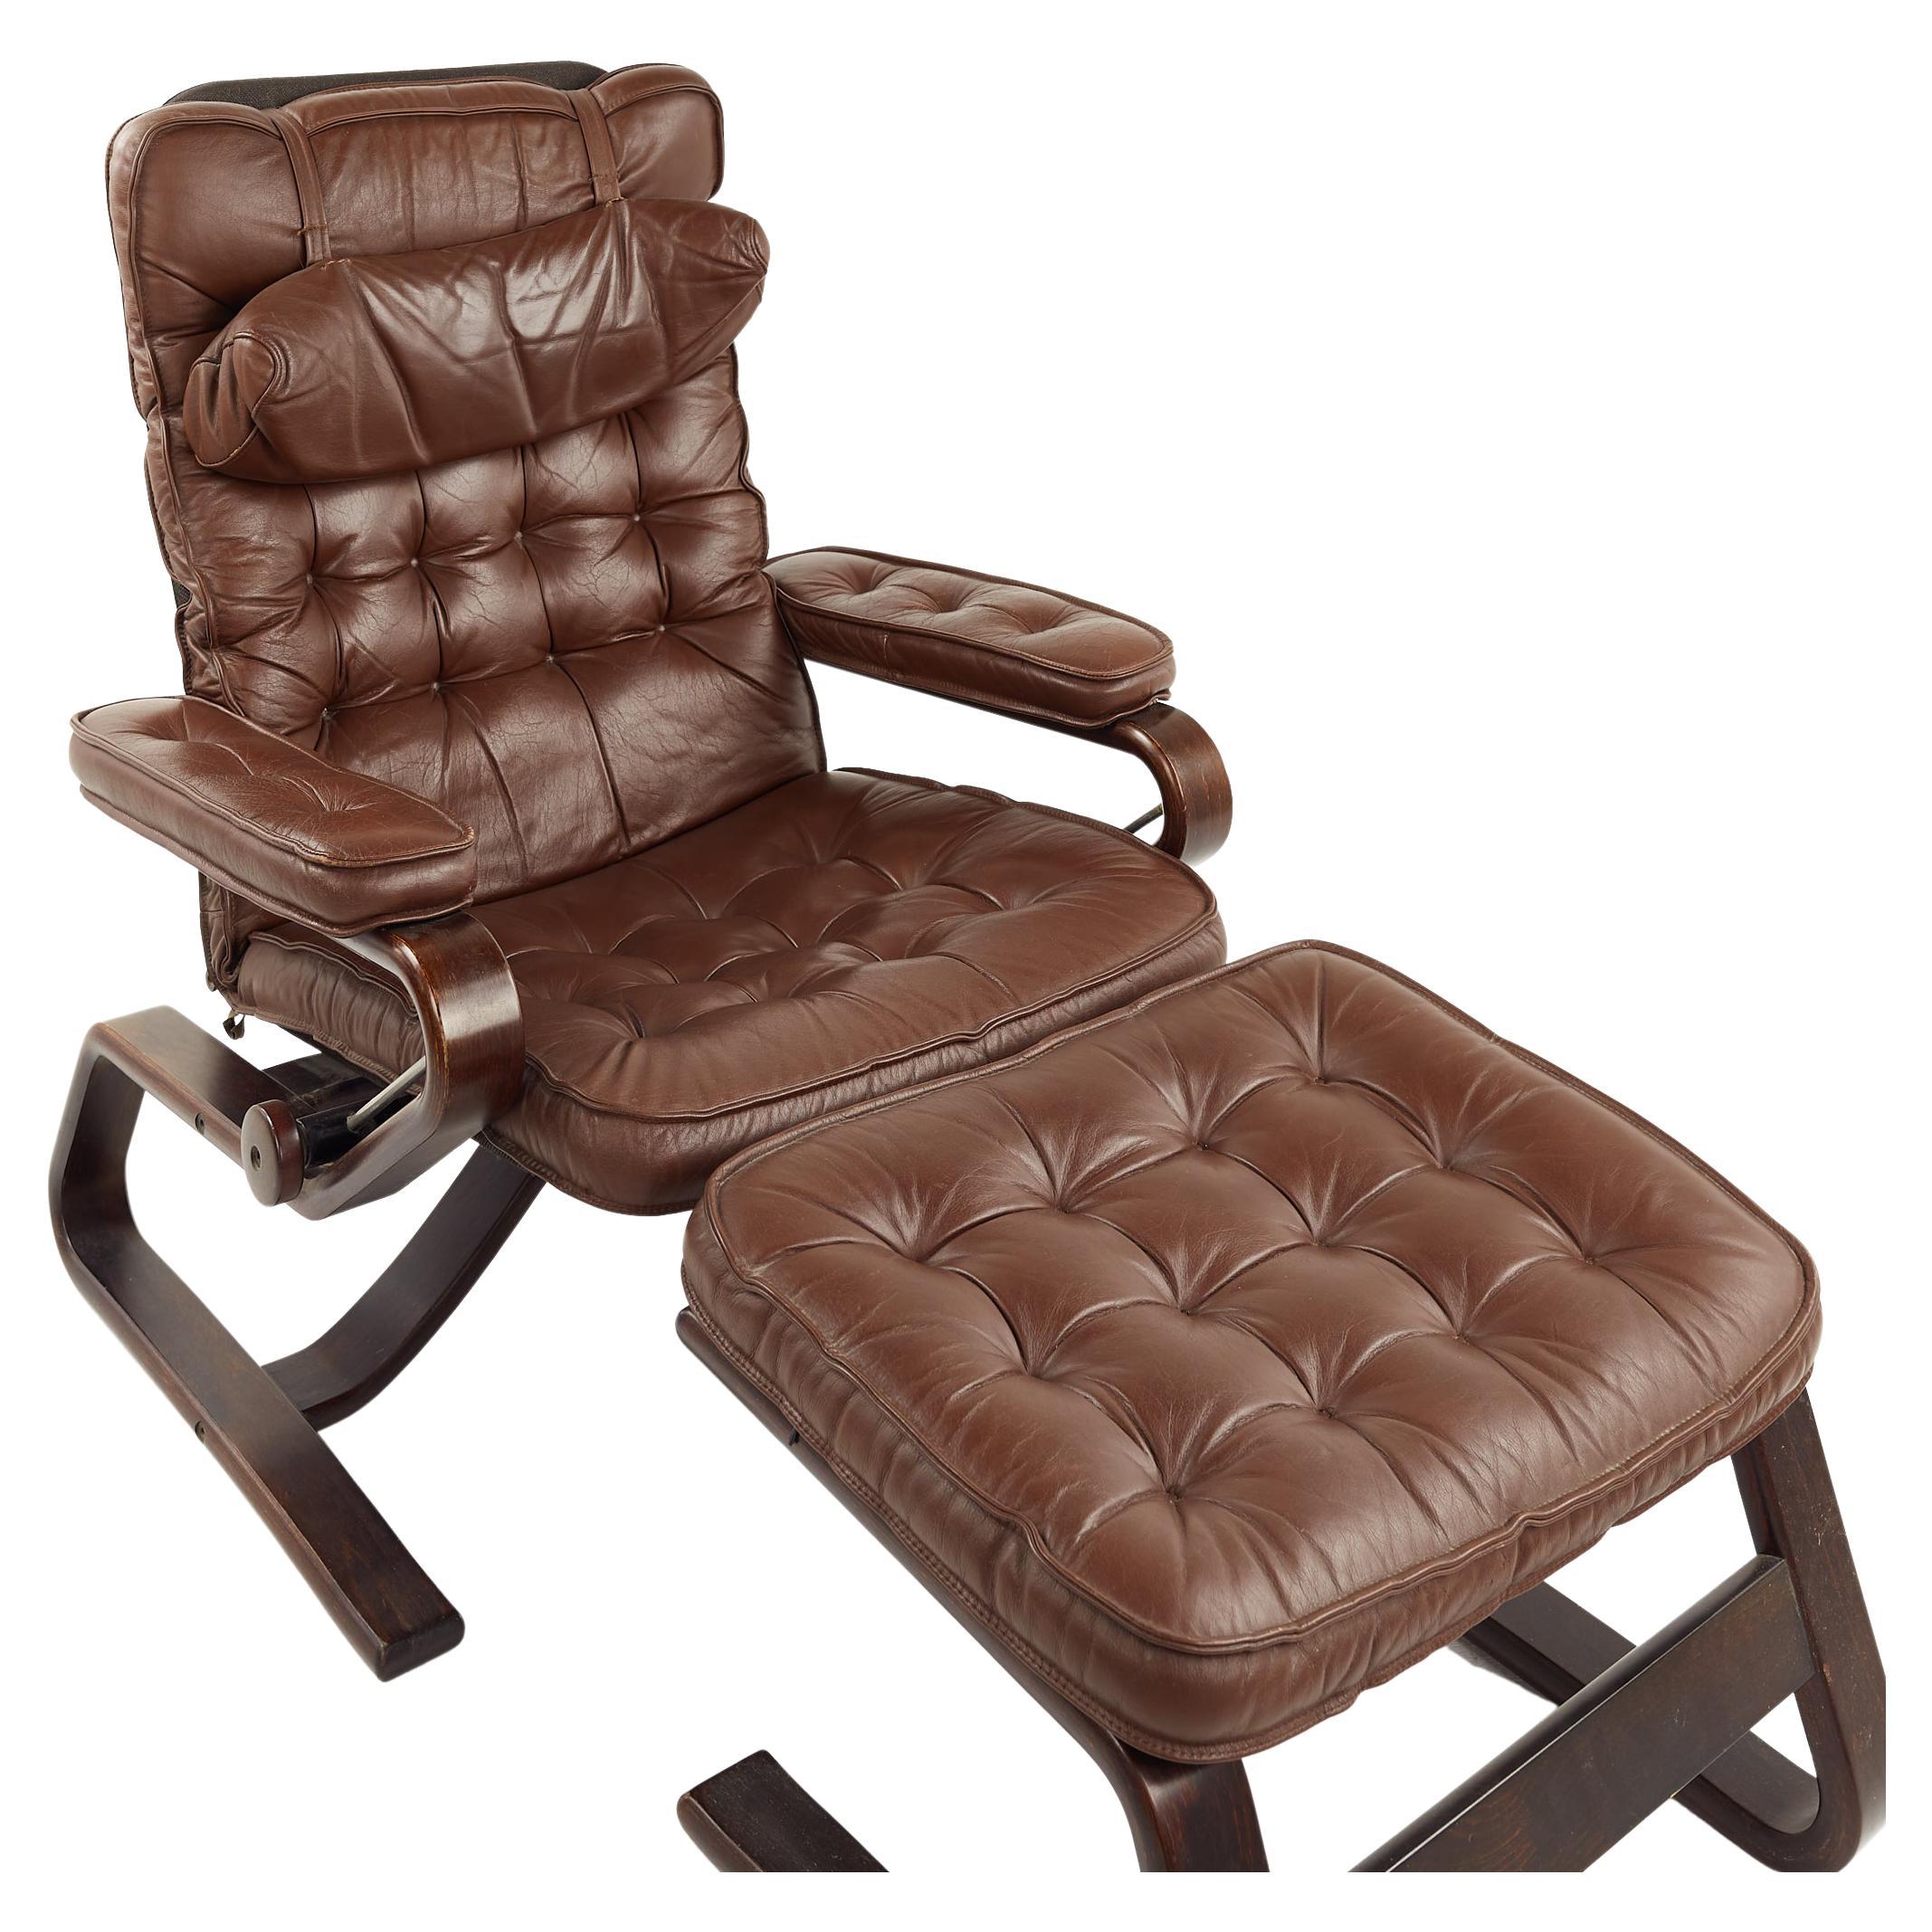 Westnofa Style Mid Century chaise longue et ottoman en cuir touffeté

Le fauteuil mesure : 30.75 de large x 29 de profond x 37 de haut, avec une hauteur d'assise de 16,5 pouces et une hauteur d'accoudoir/dégagement du fauteuil de 21,25 pouces